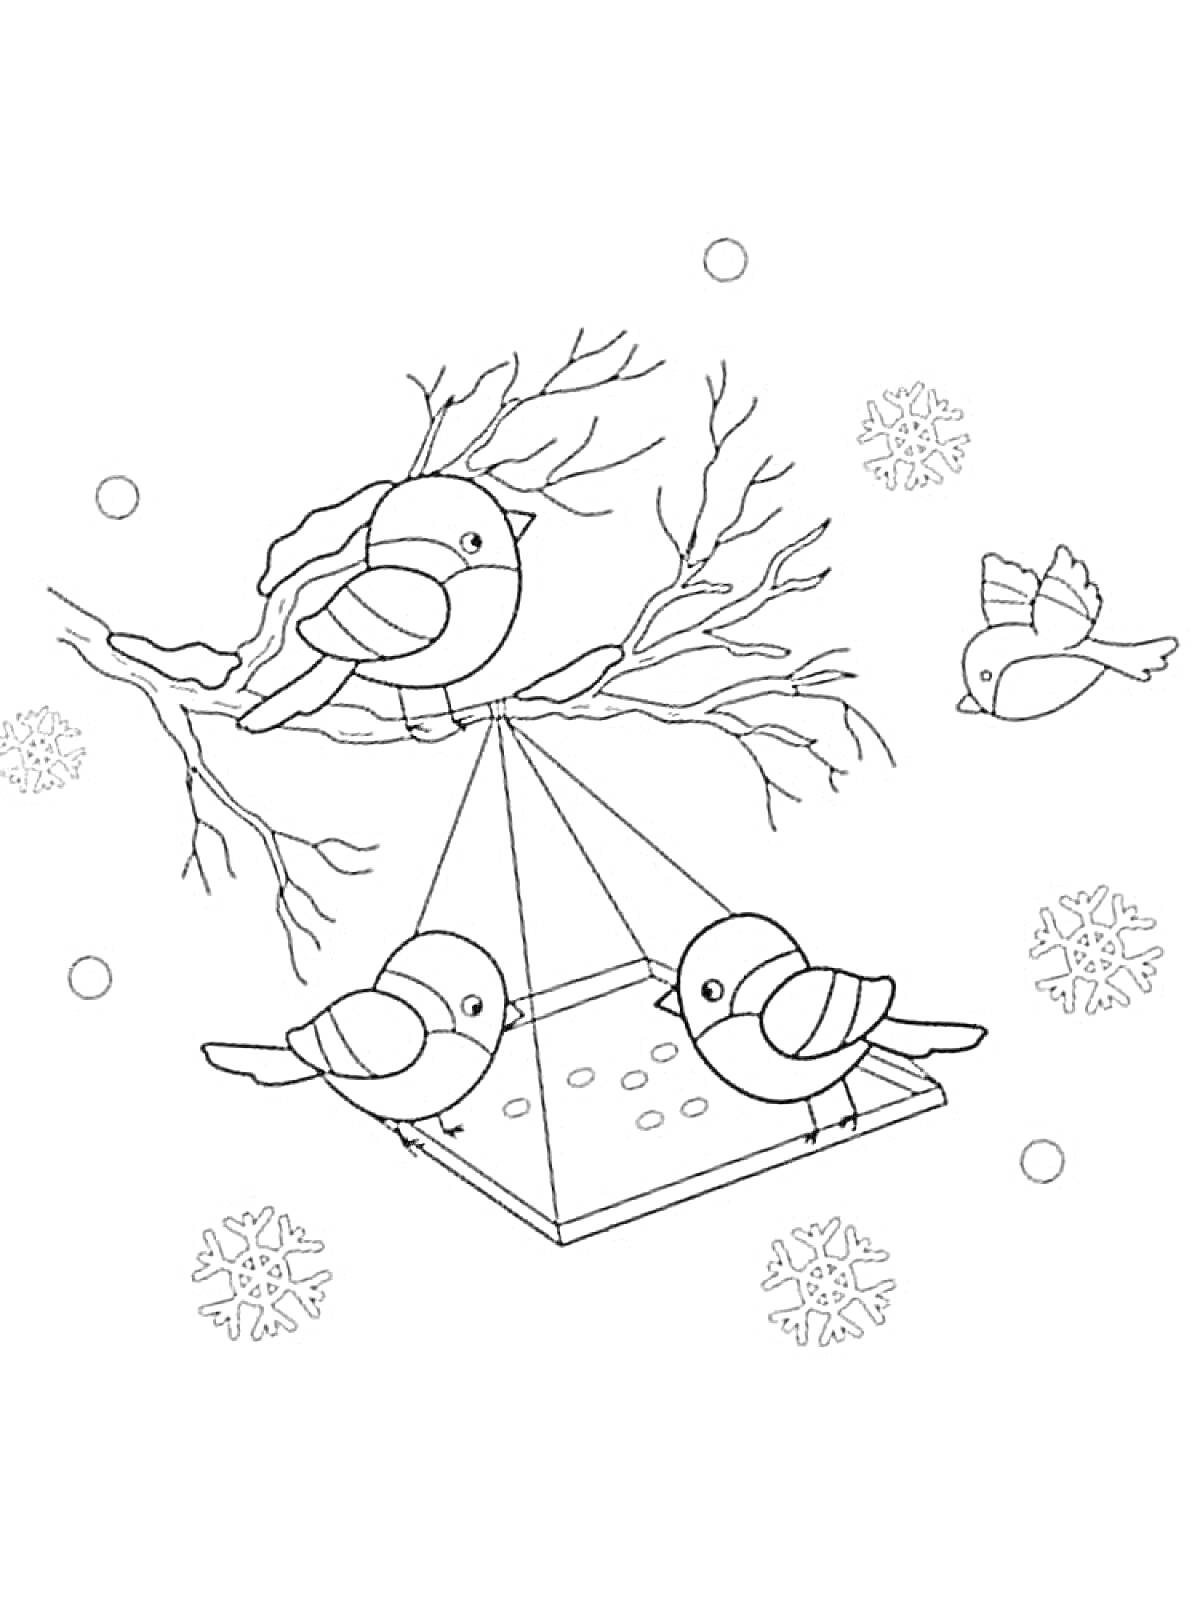 Раскраска Снегири на ветке с кормушкой и снежинками